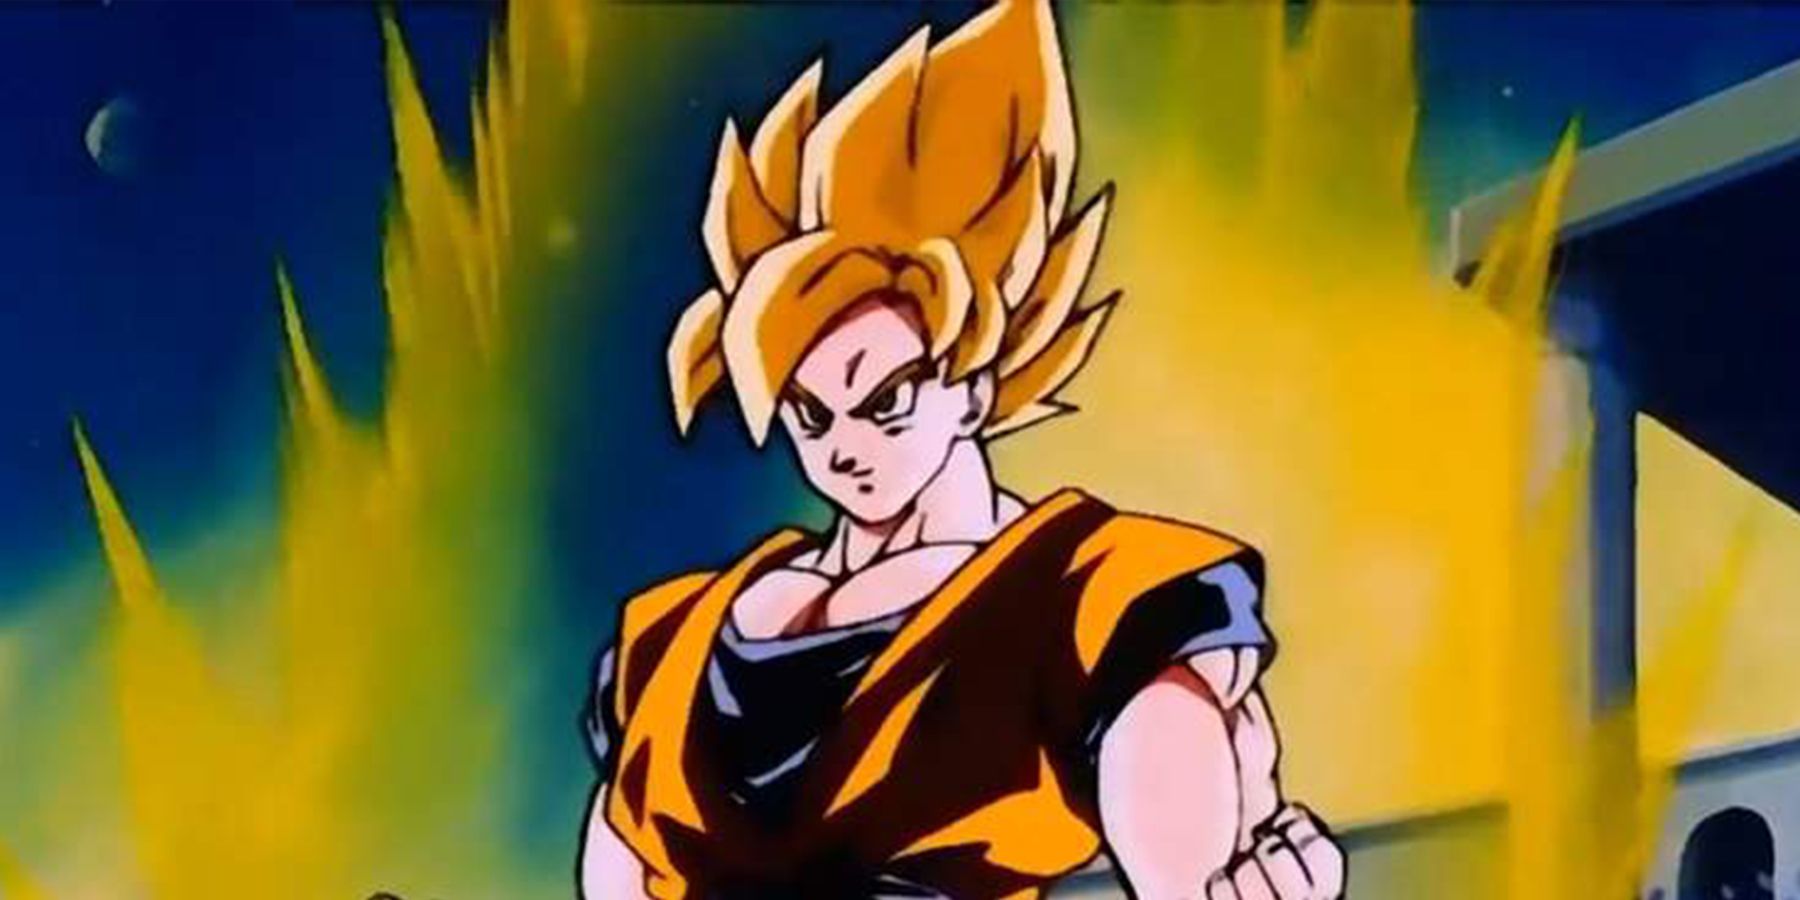 Goku in Super Saiyan form in Dragon Ball Z.